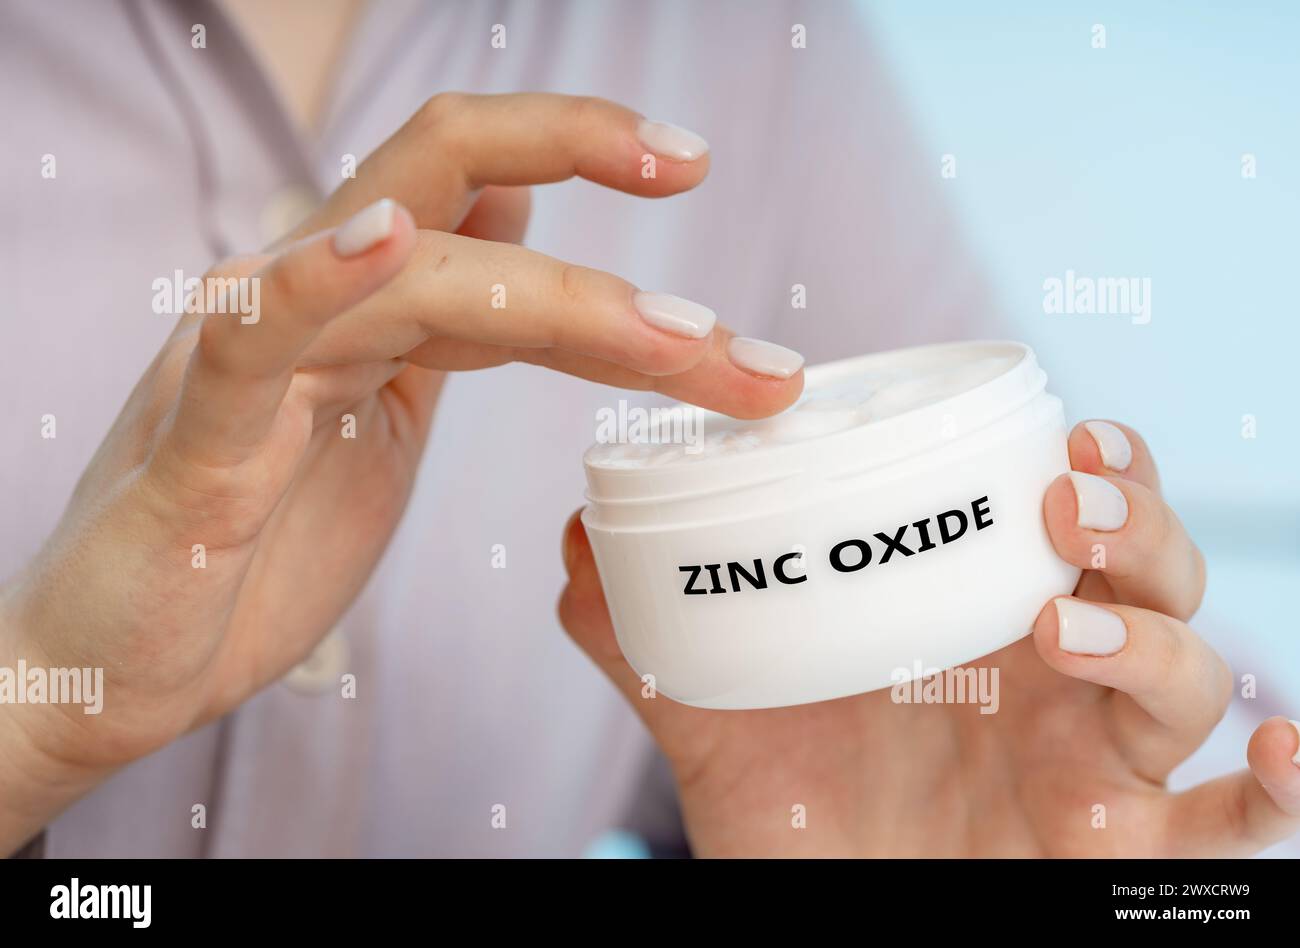 Crème médicale à l'oxyde de zinc, image conceptuelle Banque D'Images